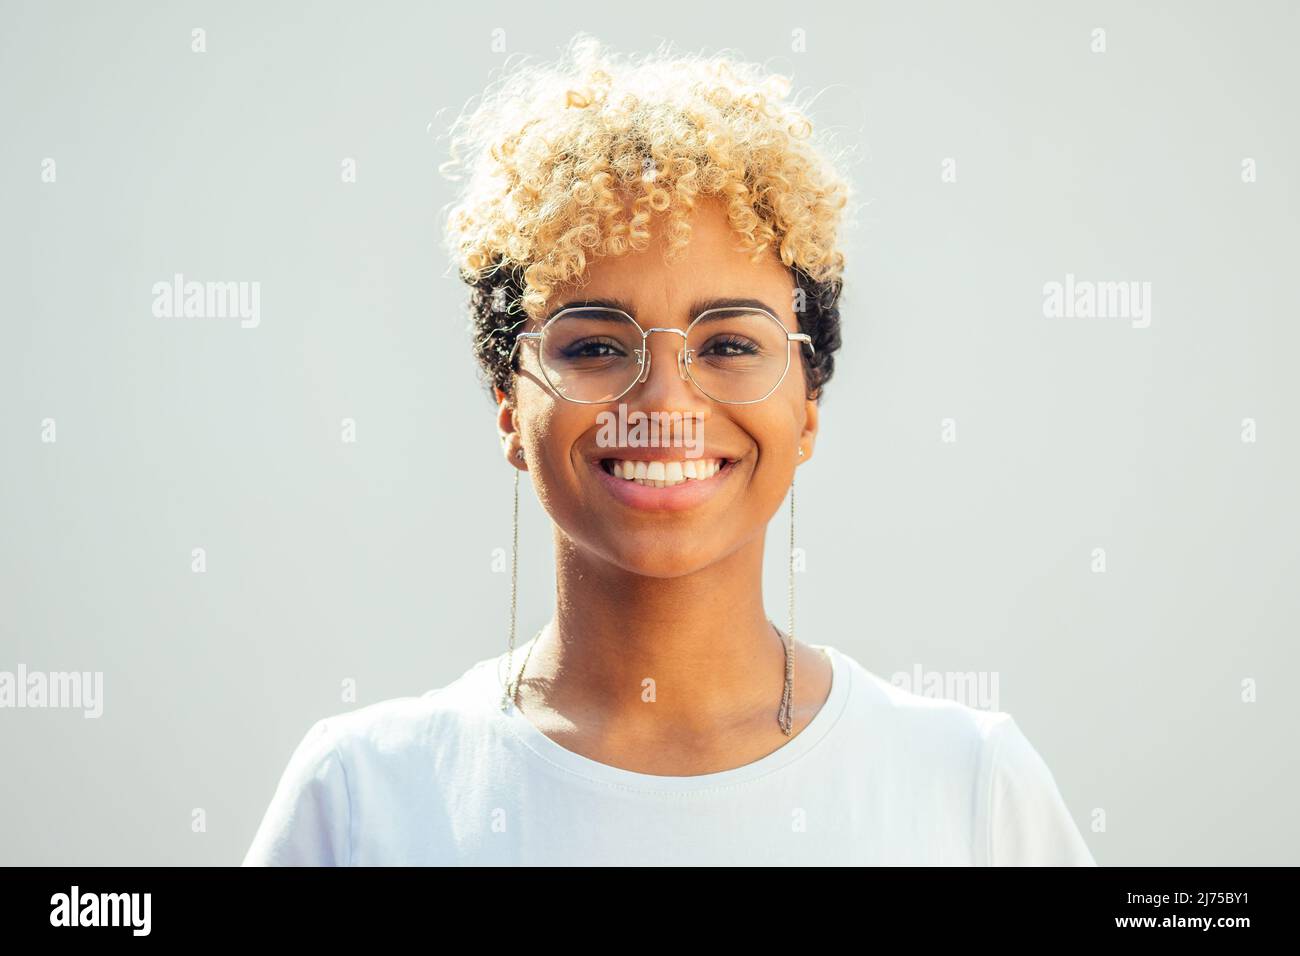 Jeune femme hispanique brésilienne avec des cheveux freux blonds frais regardant à travers des lunettes sur fond blanc Banque D'Images